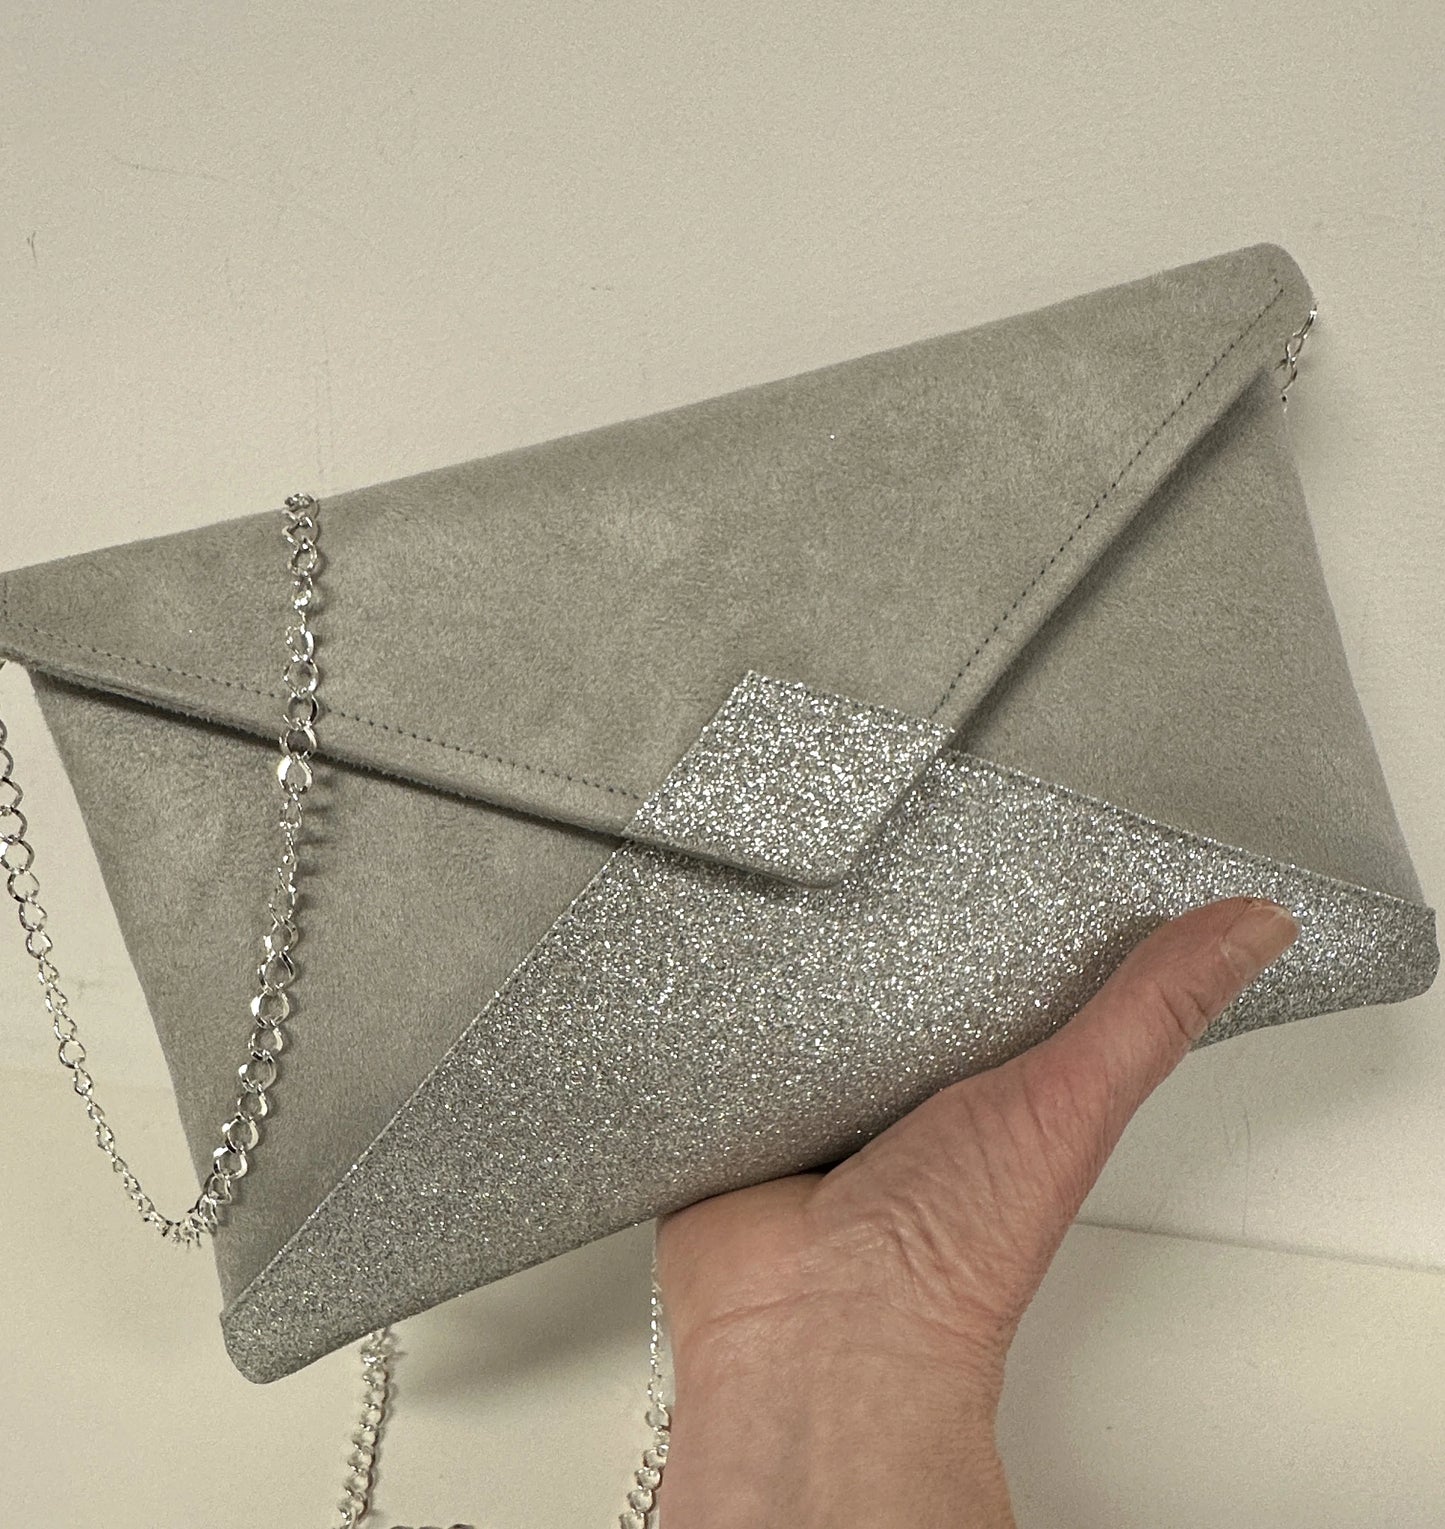 Le sac pochette Isa gris perle à paillettes argentées, avec sa chainette amovible.